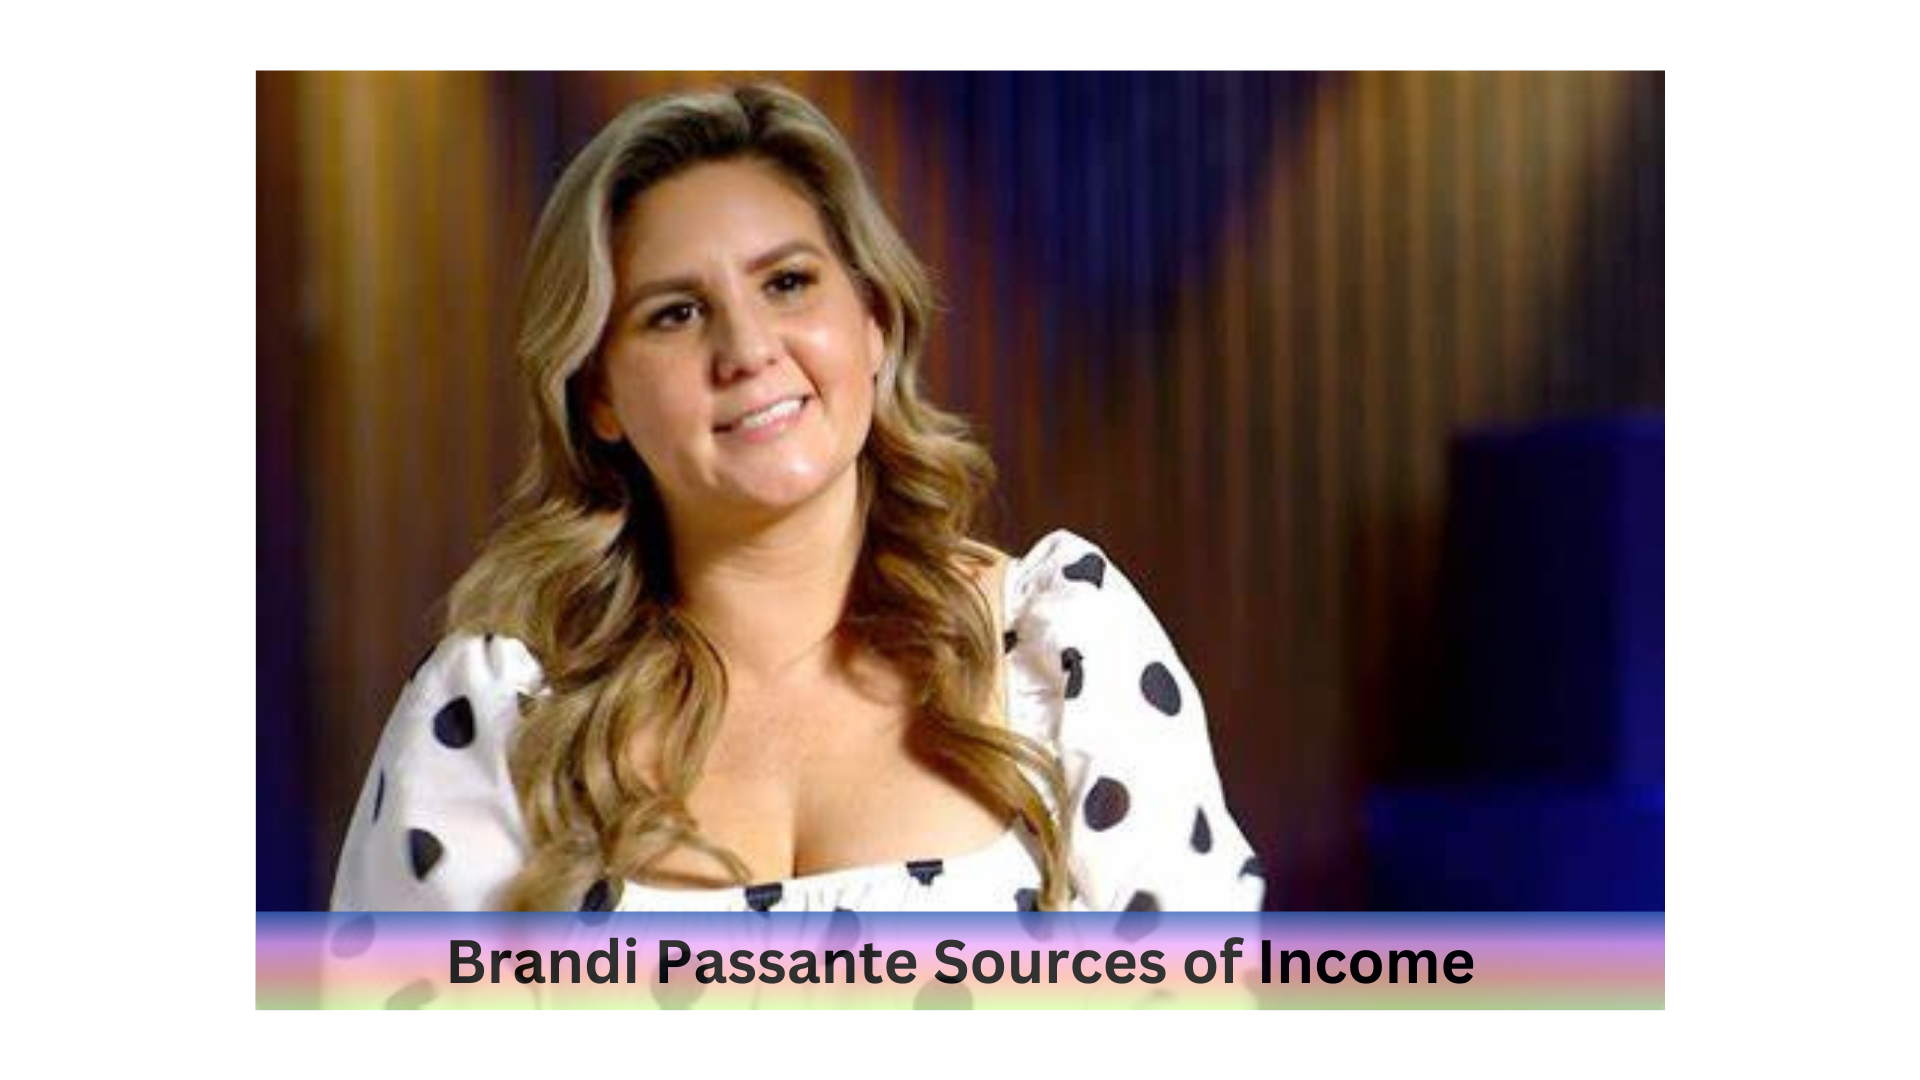 Sources of Income Brandi Passante